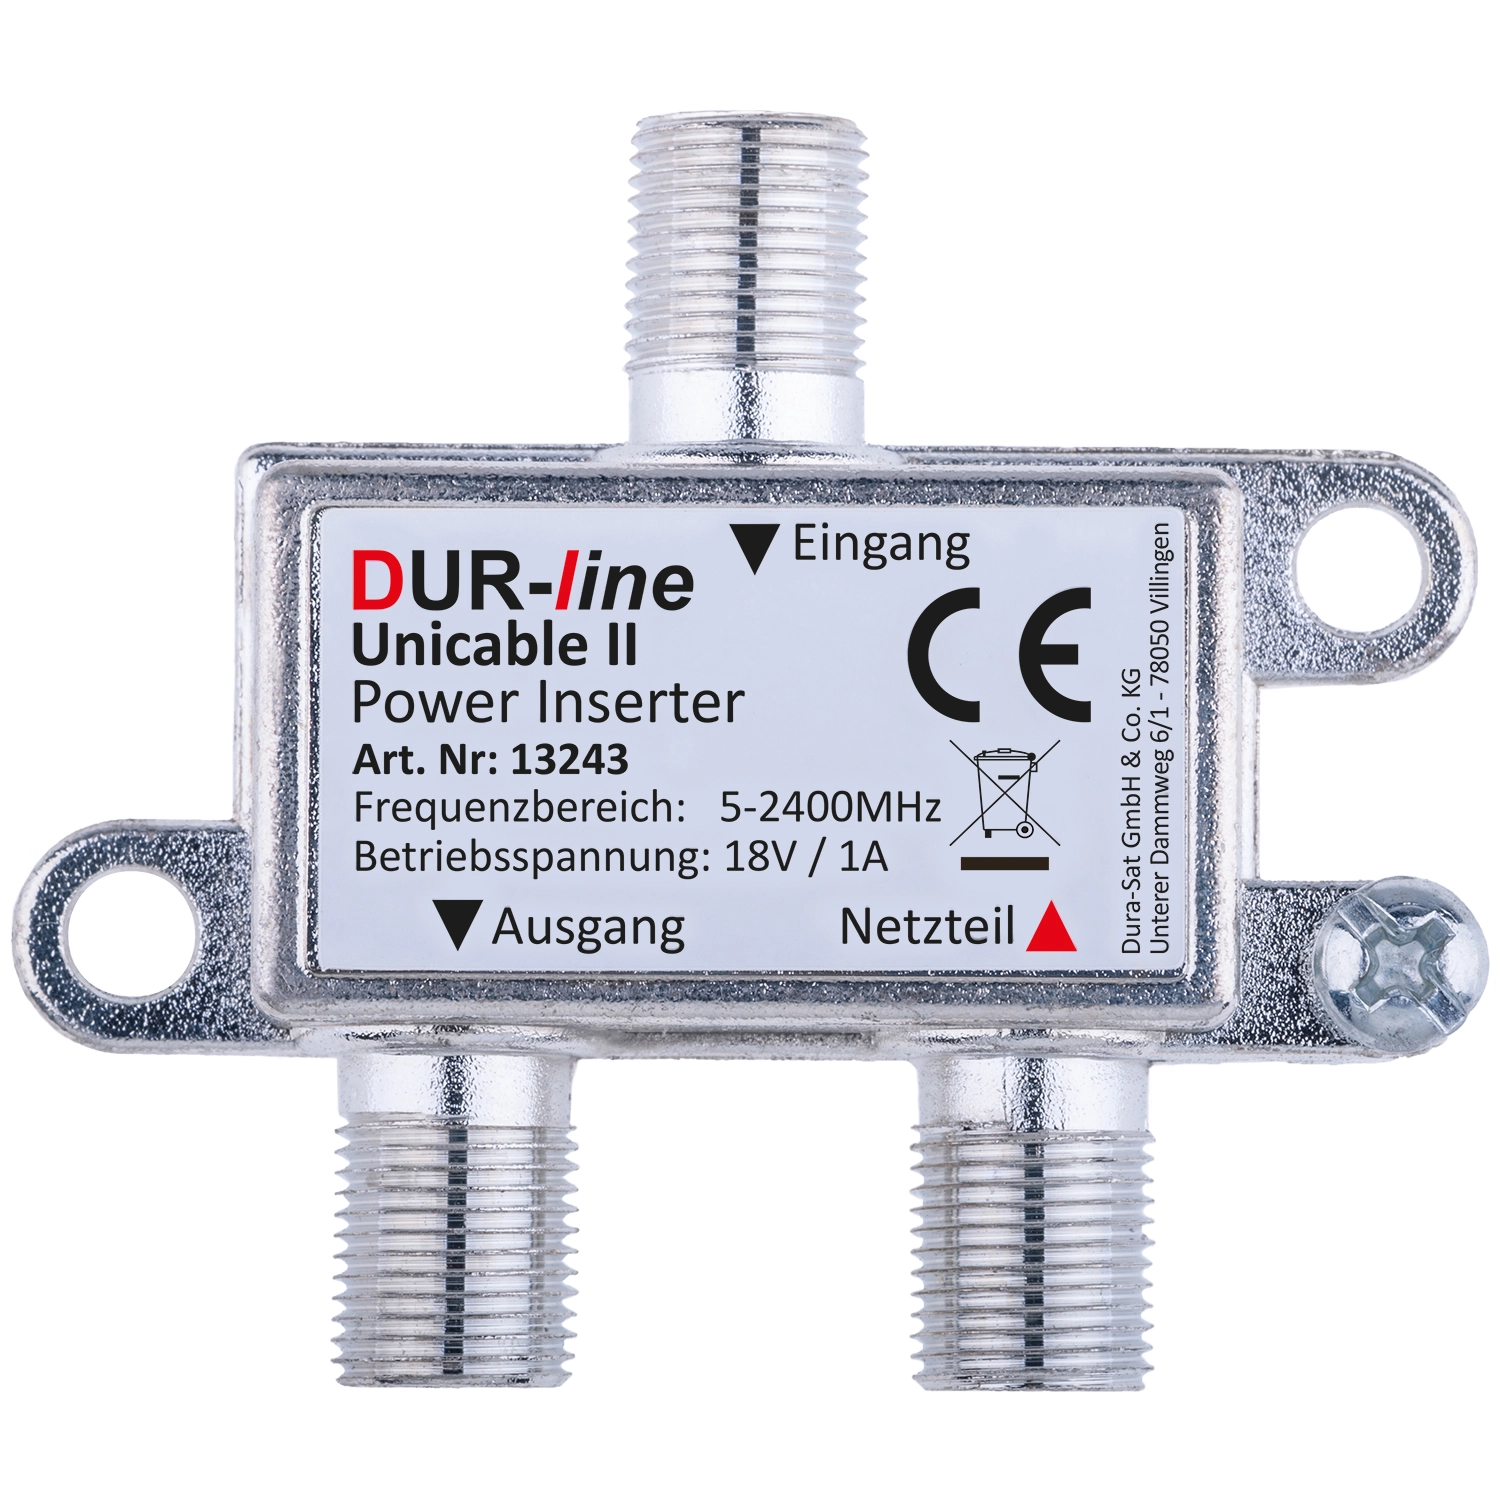 DUR-line DPI - Power Inserter